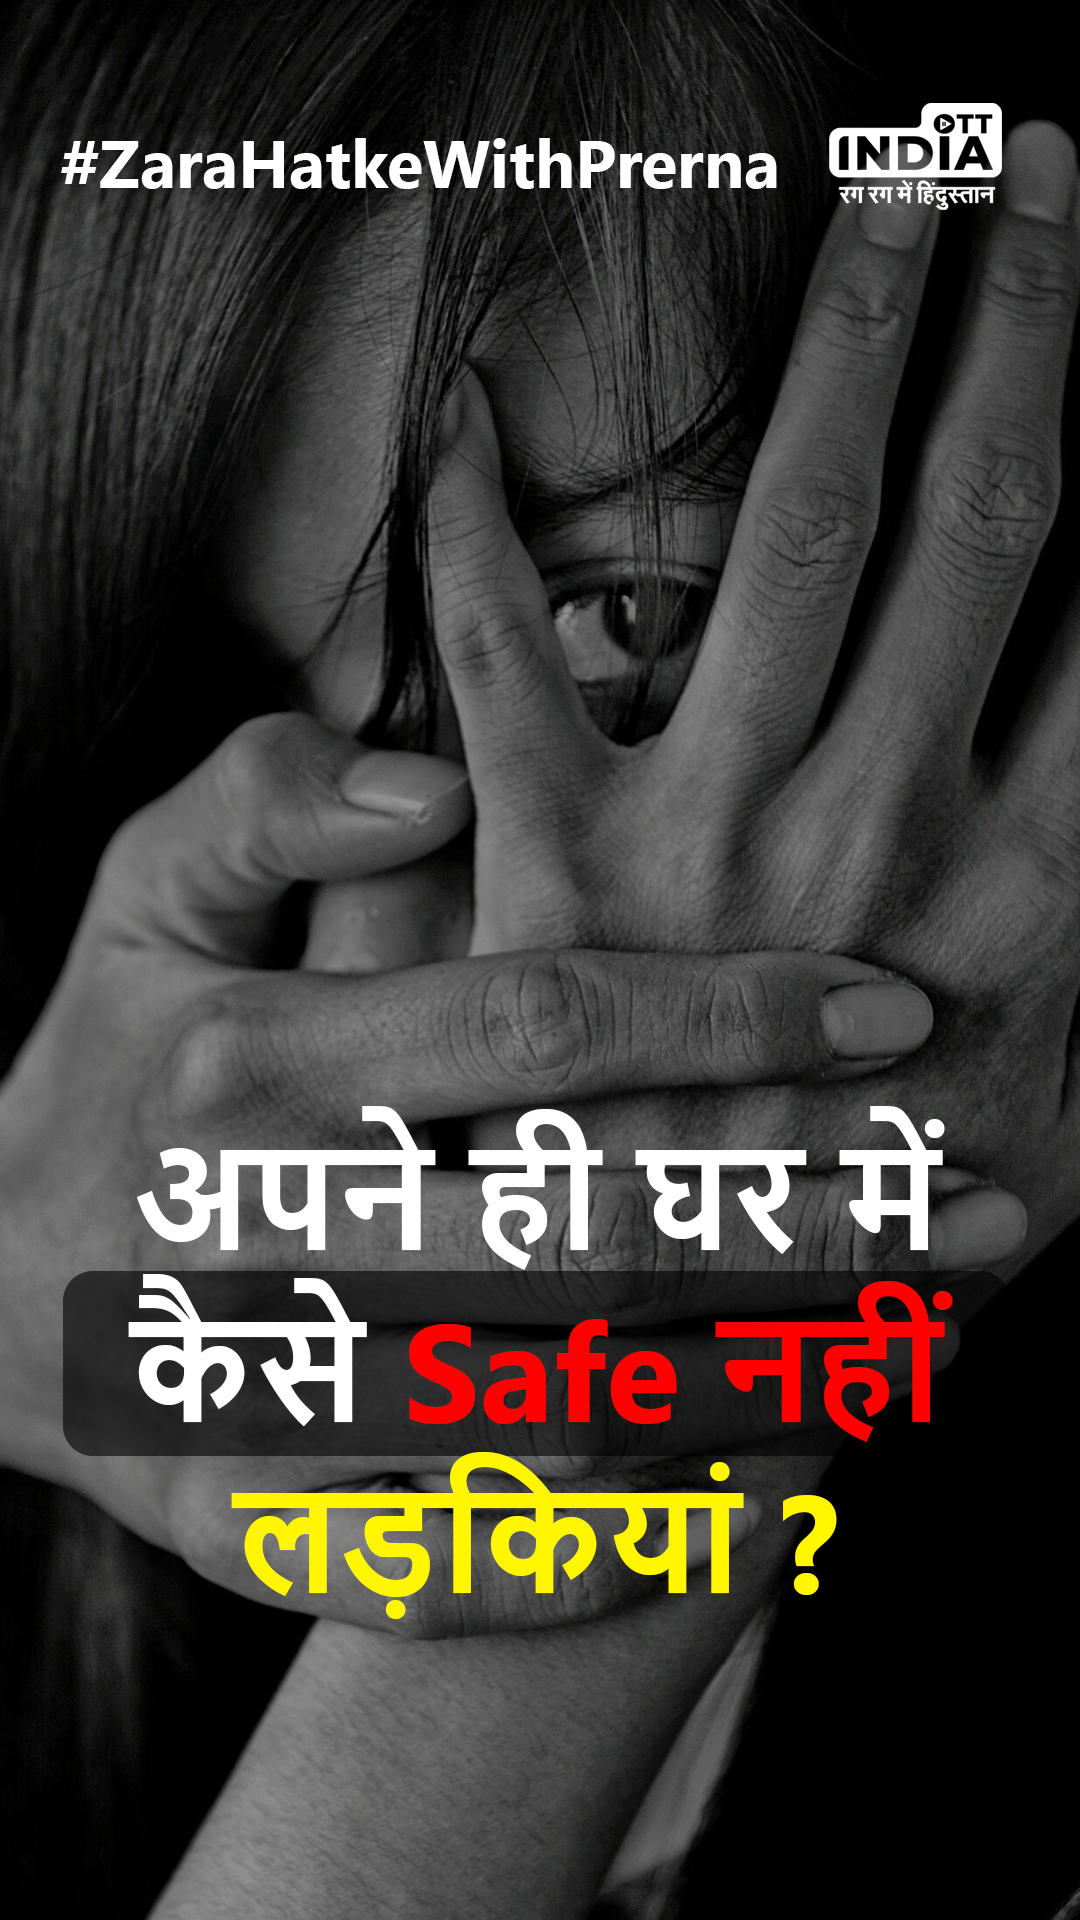 Women Harassment in India: अपने ही घर में कैसे Safe नहीं लड़कियां ? #ZaraHatkeWithPrerna